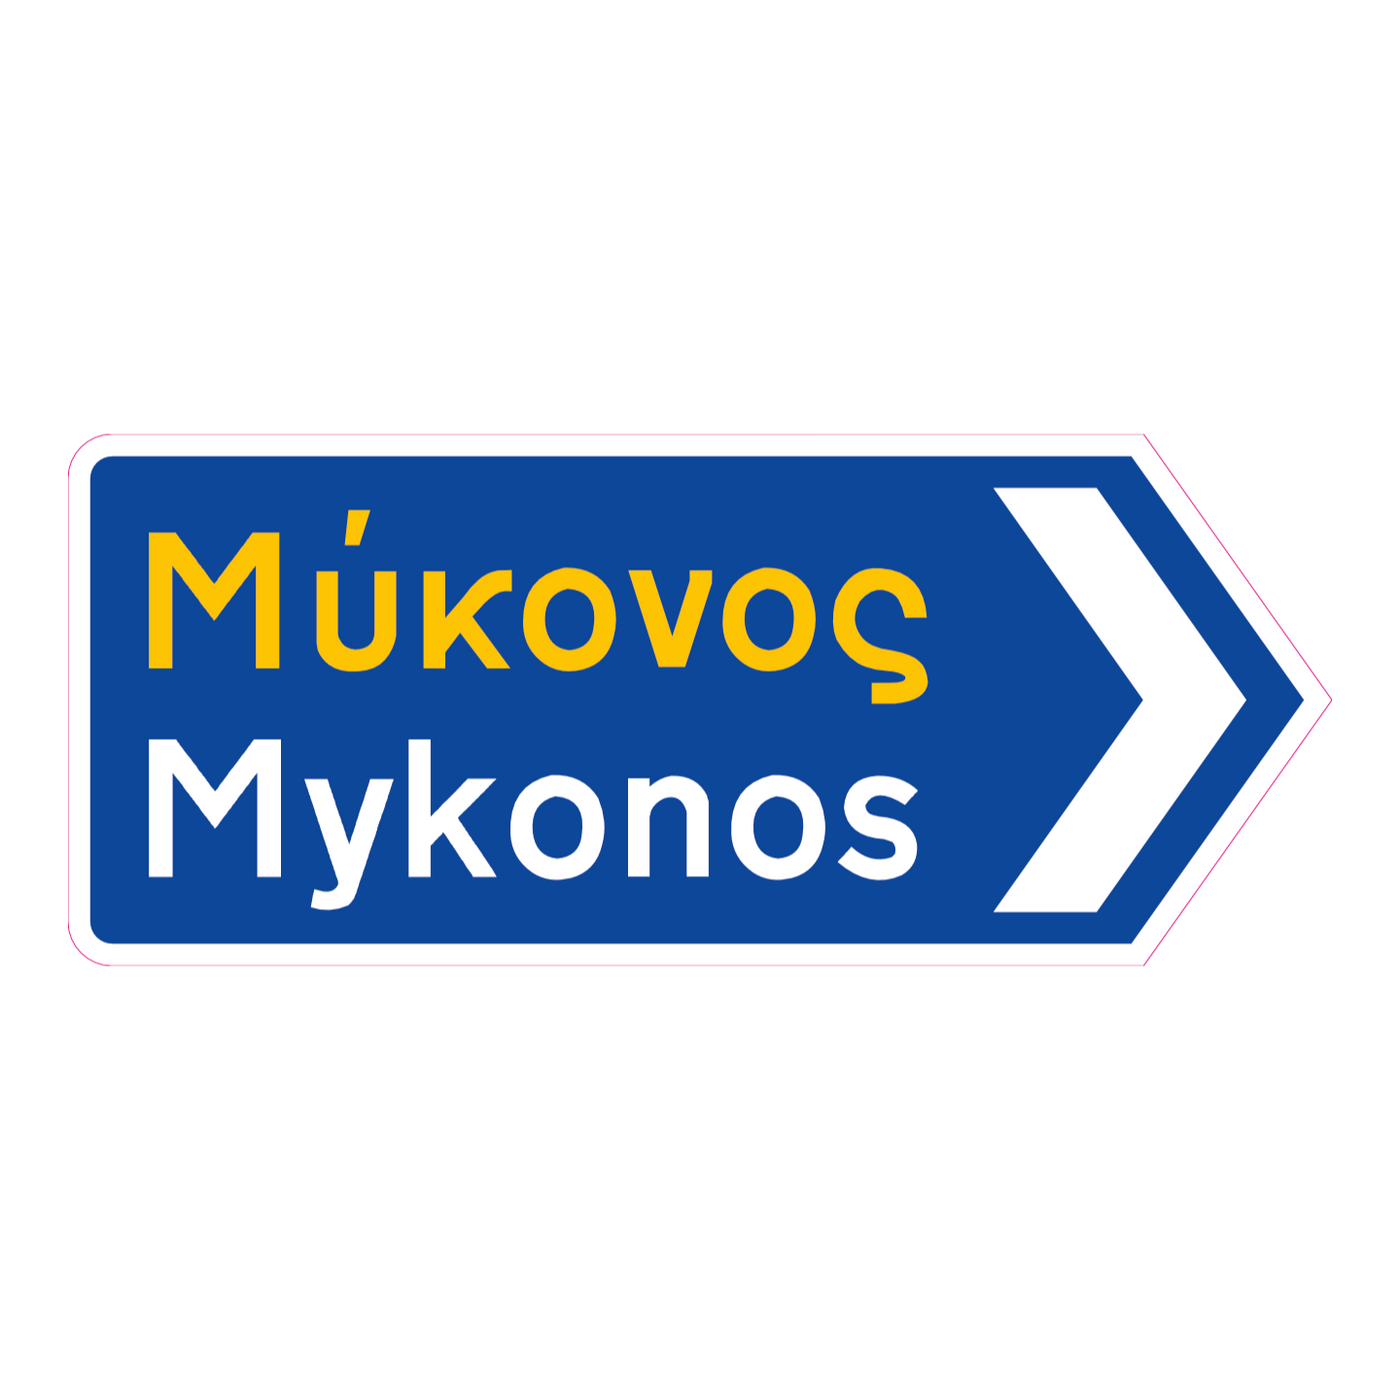 Mykonos Greek road sign